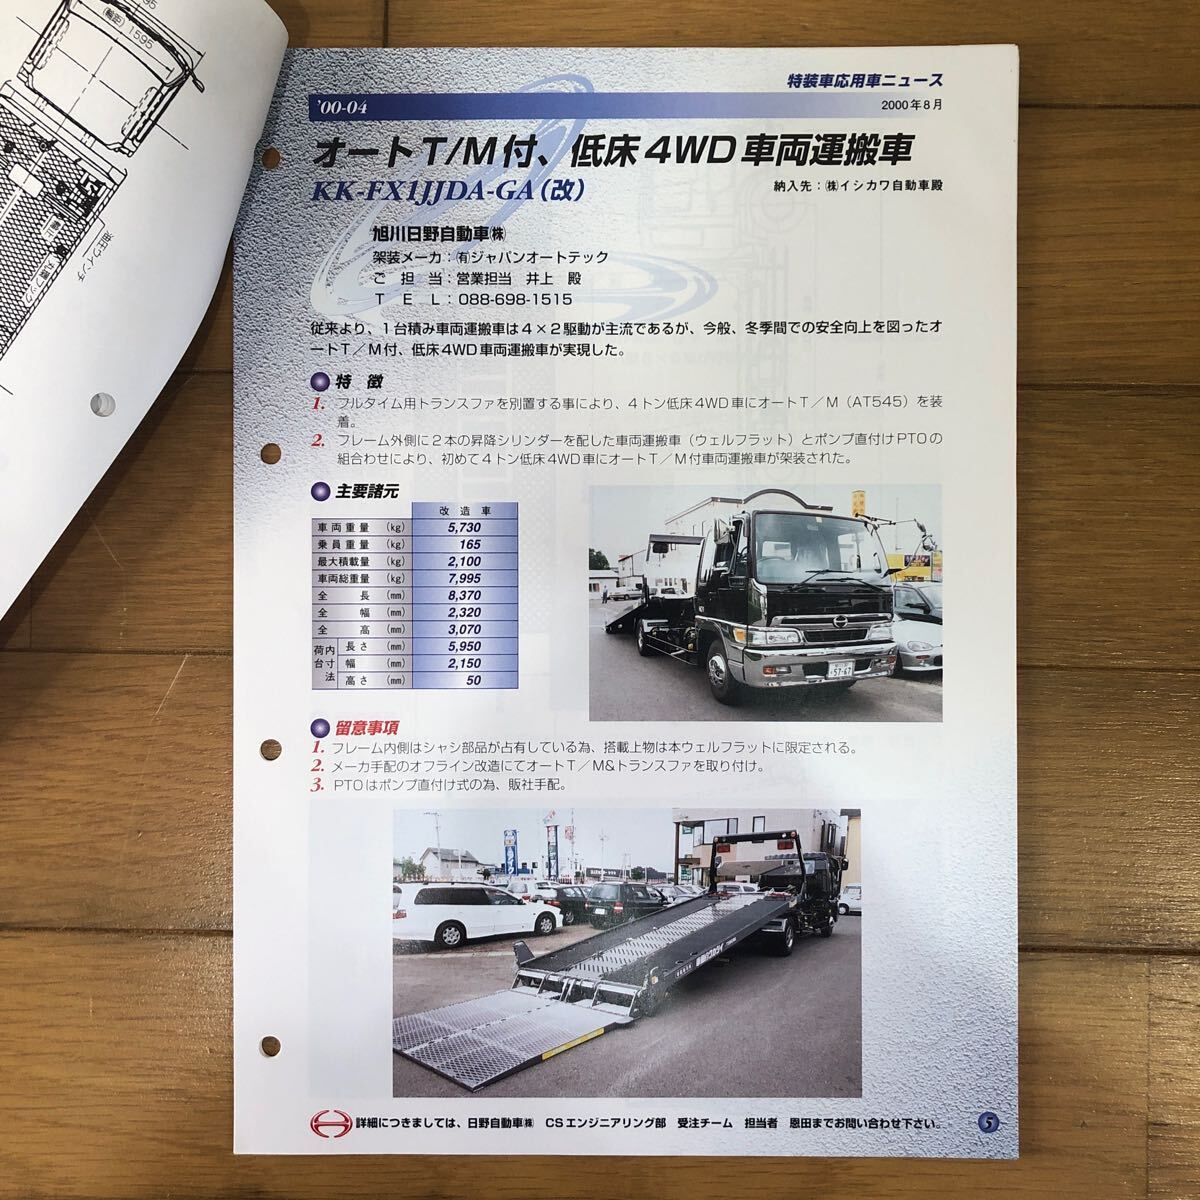  Hino Motors catalog special equipment car respondent for car News 